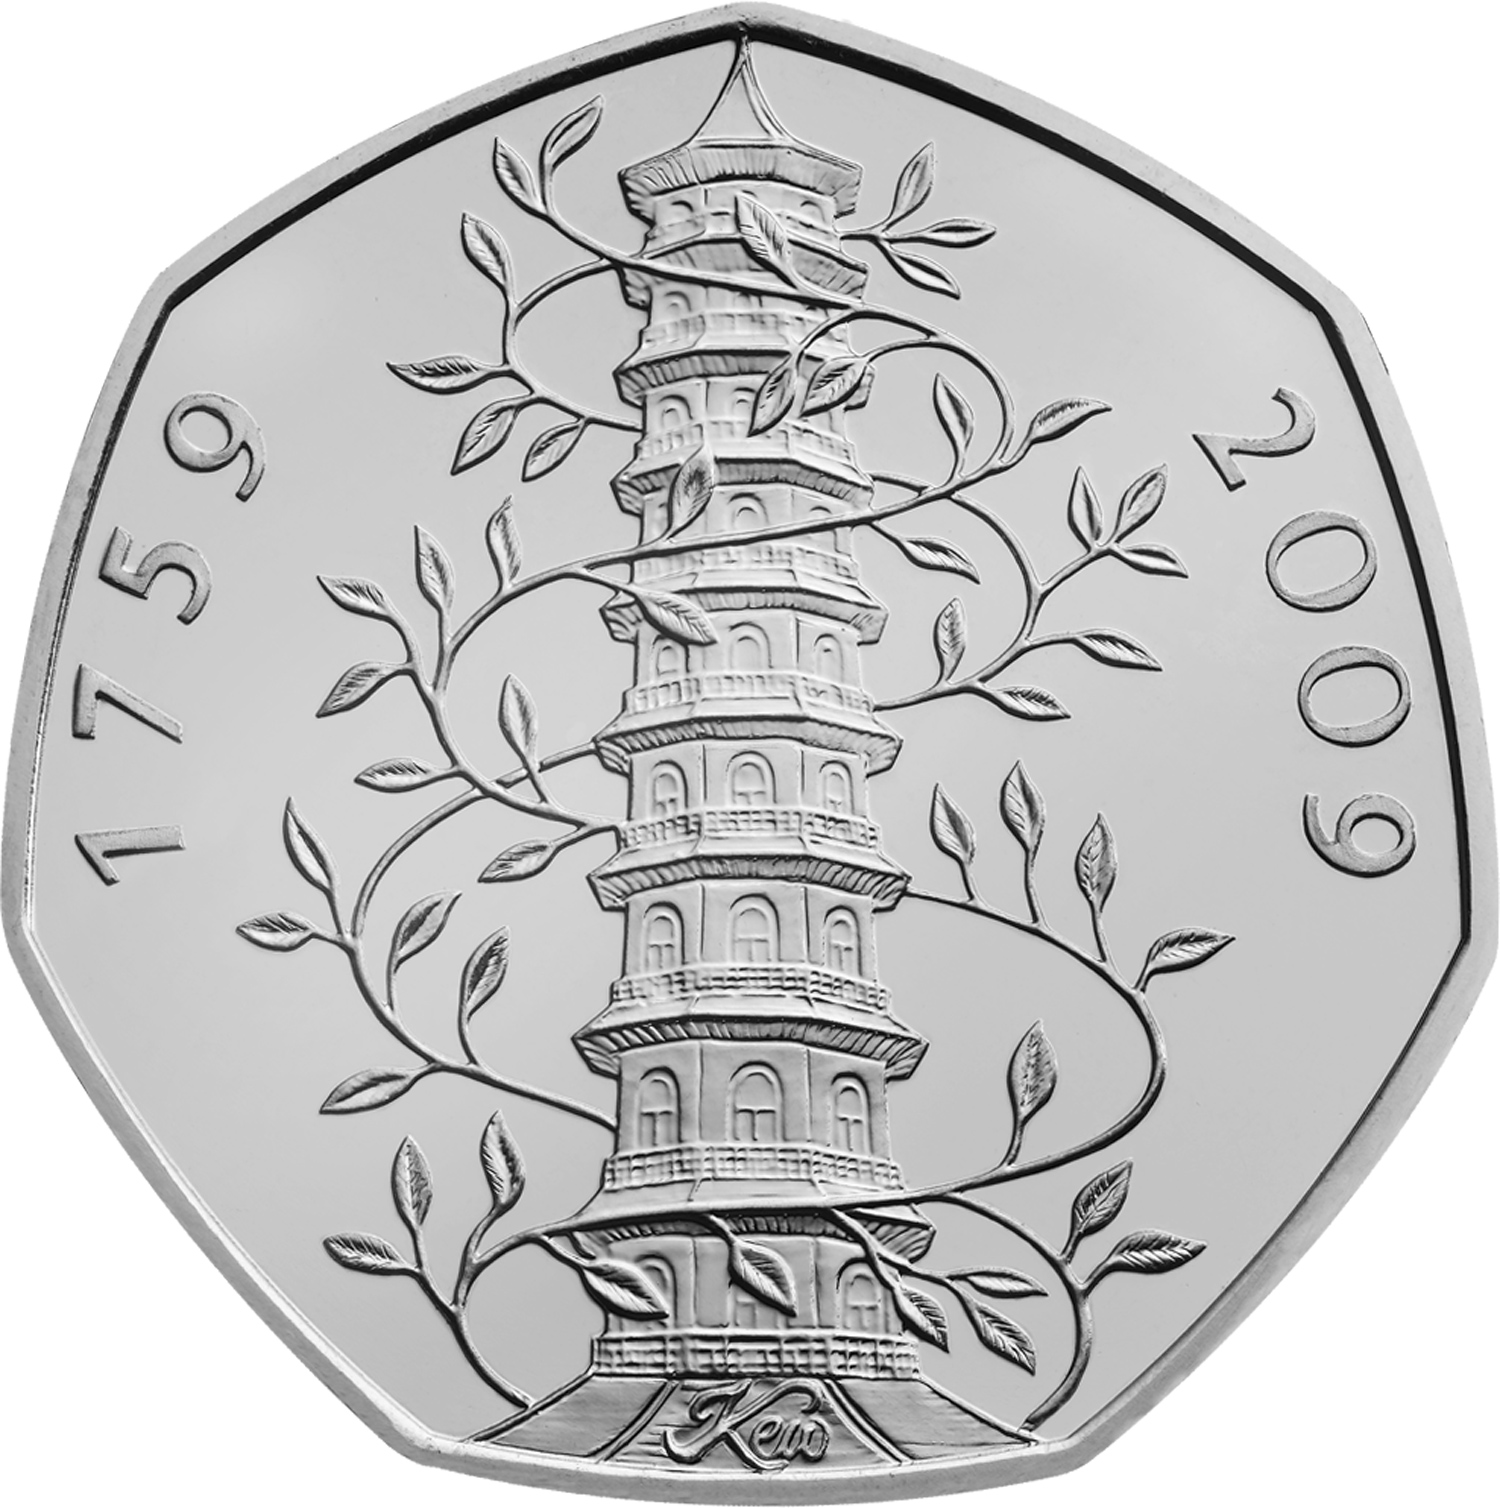 Es handelt sich um eine der seltensten Münzen der Royal Mint